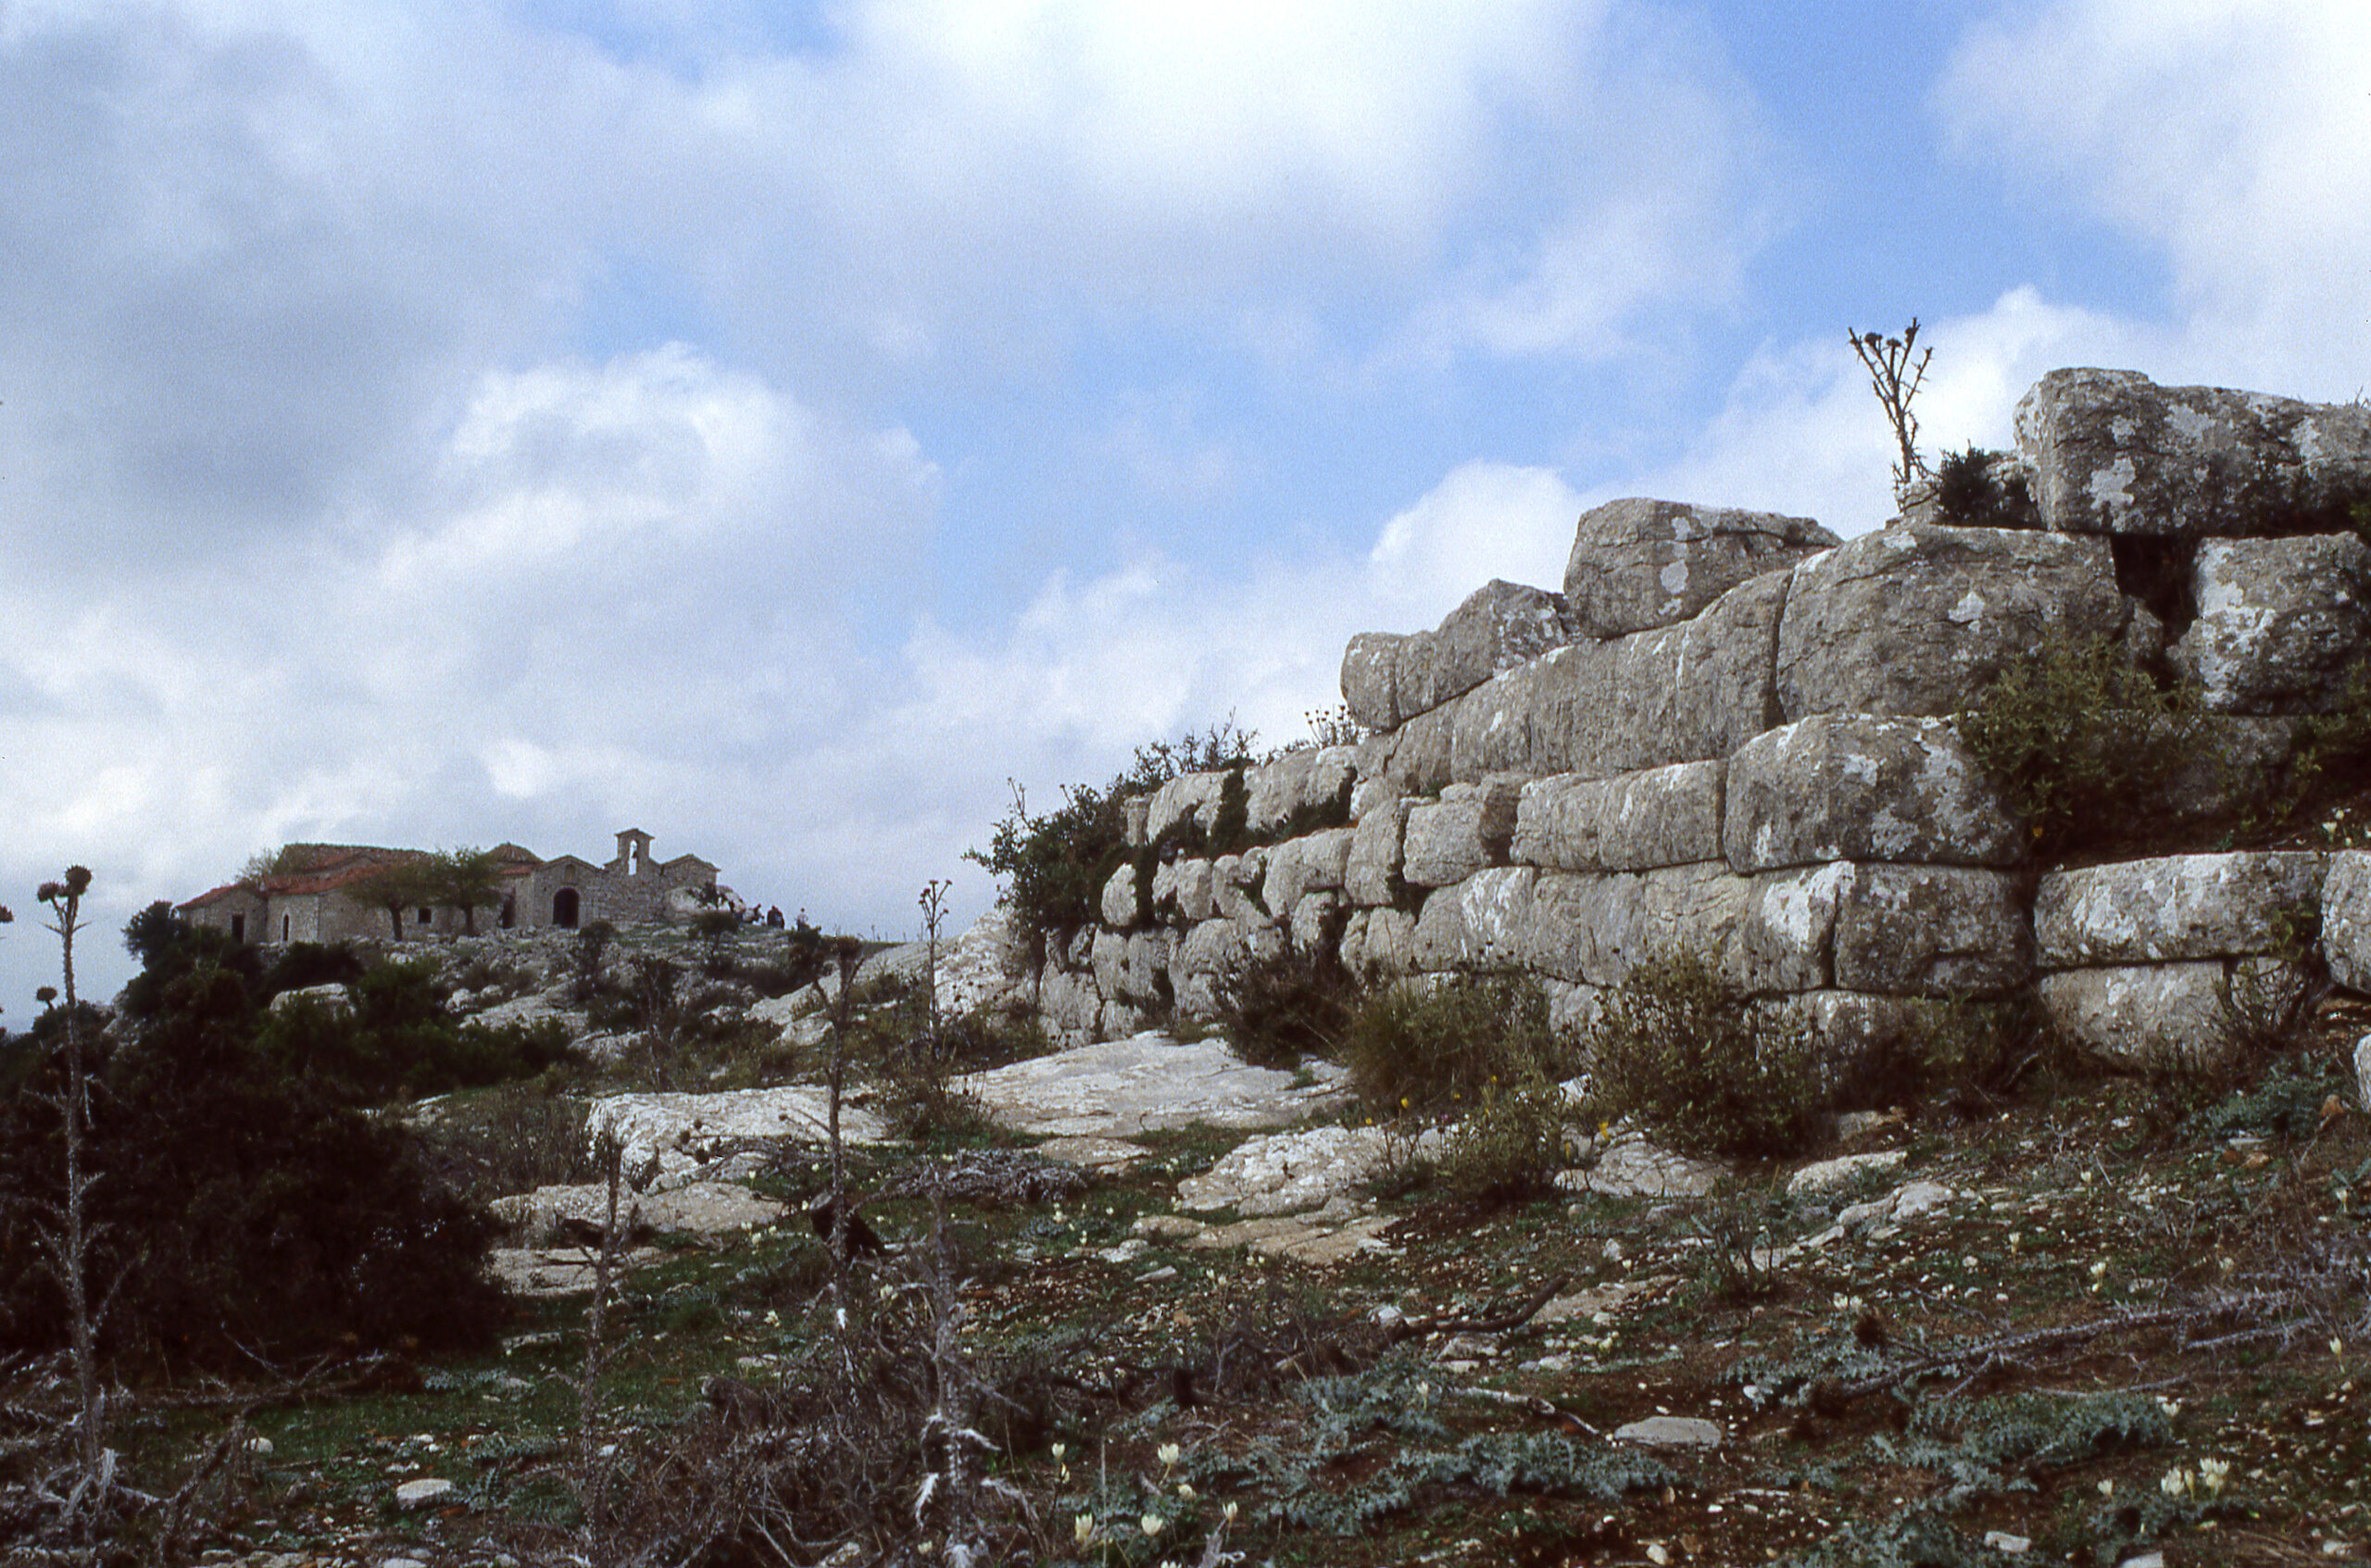 Phong cảnh bức tường cổ kính với lịch sử lâu đời 32